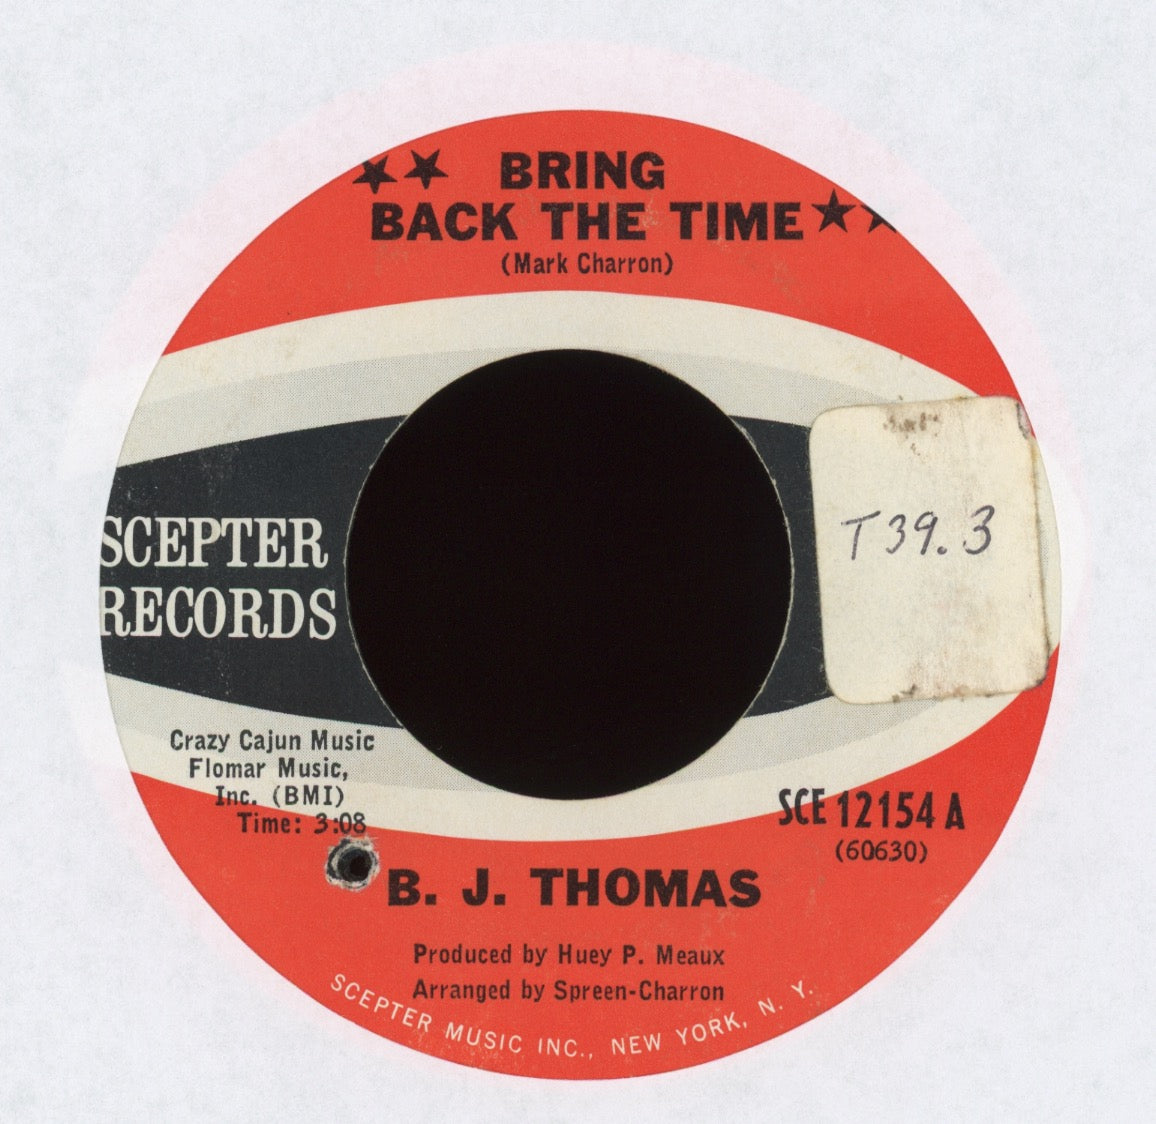 B.J. Thomas - I Don't Have a Mind of My Own on Scepter